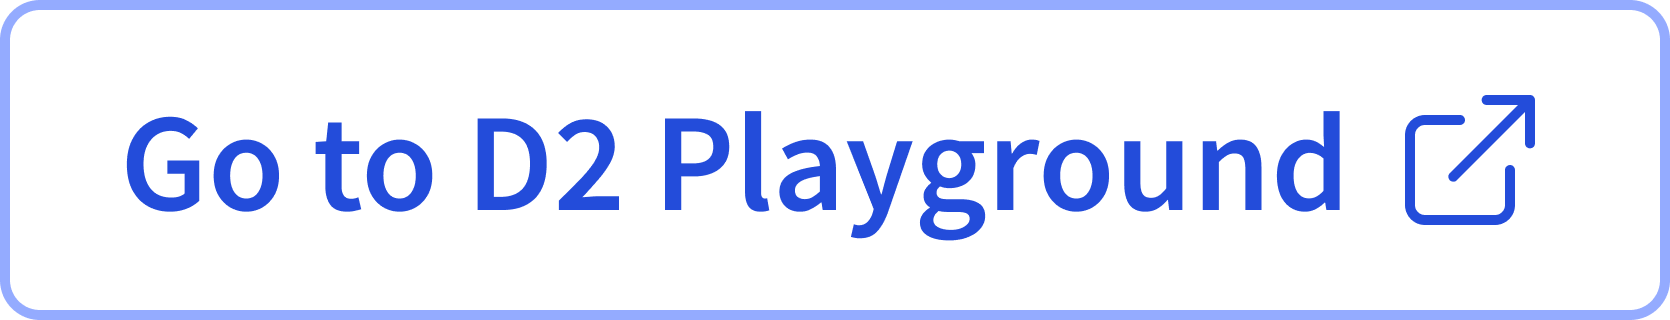 D2 Playground button